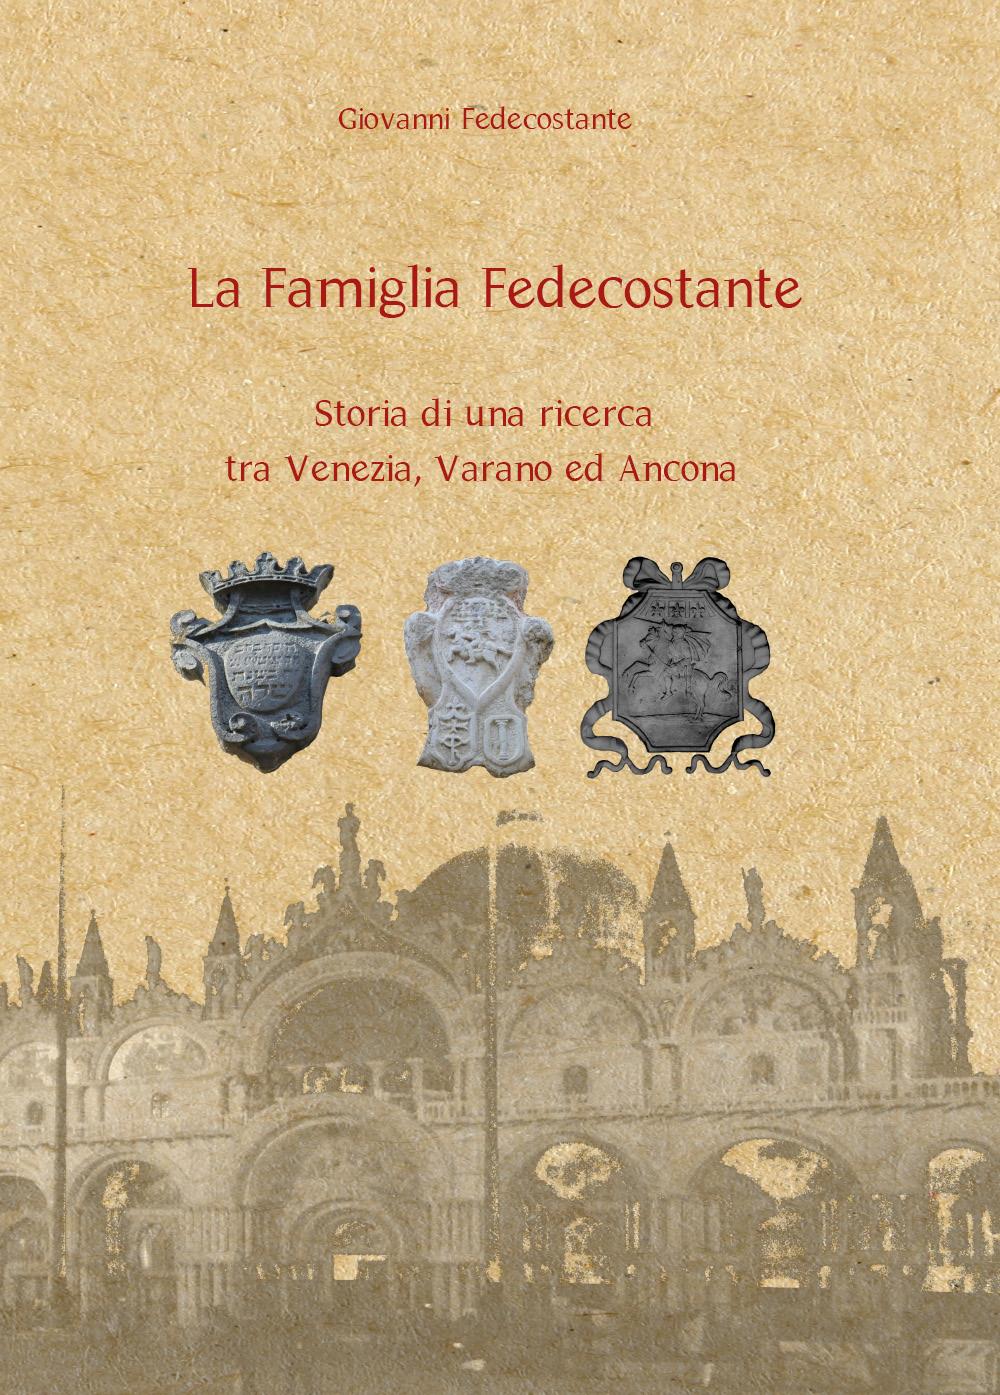 La Famiglia Fedecostante - Storia di una ricerca tra Venezia, Varano ed Ancona